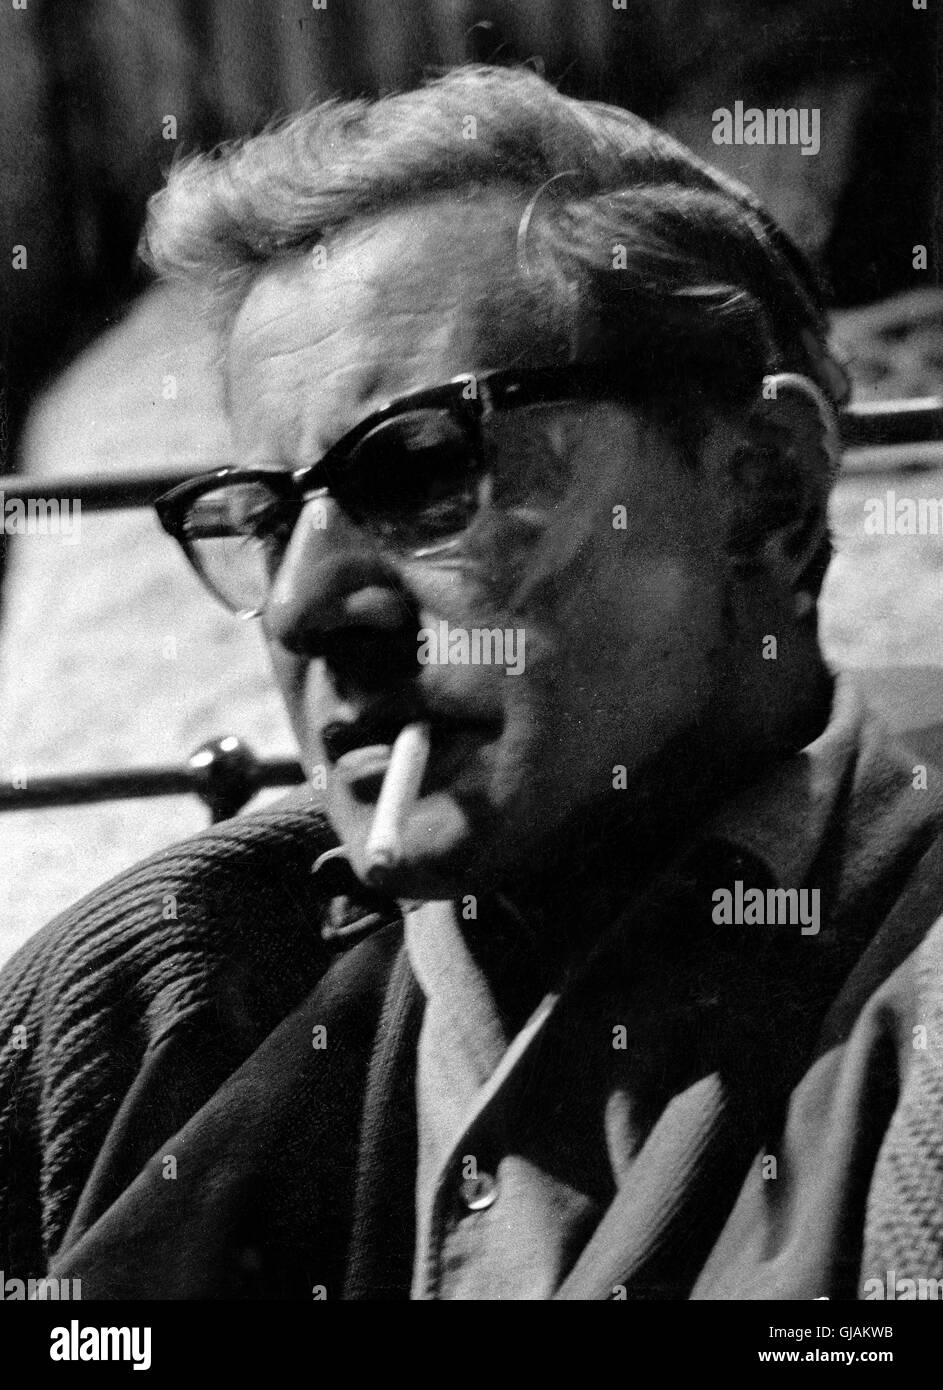 Deutscher Schauspieler Dieter Borsche, Deutschland 1950er Jahre. El actor alemán Dieter Borsche, Alemania 1950. Foto de stock